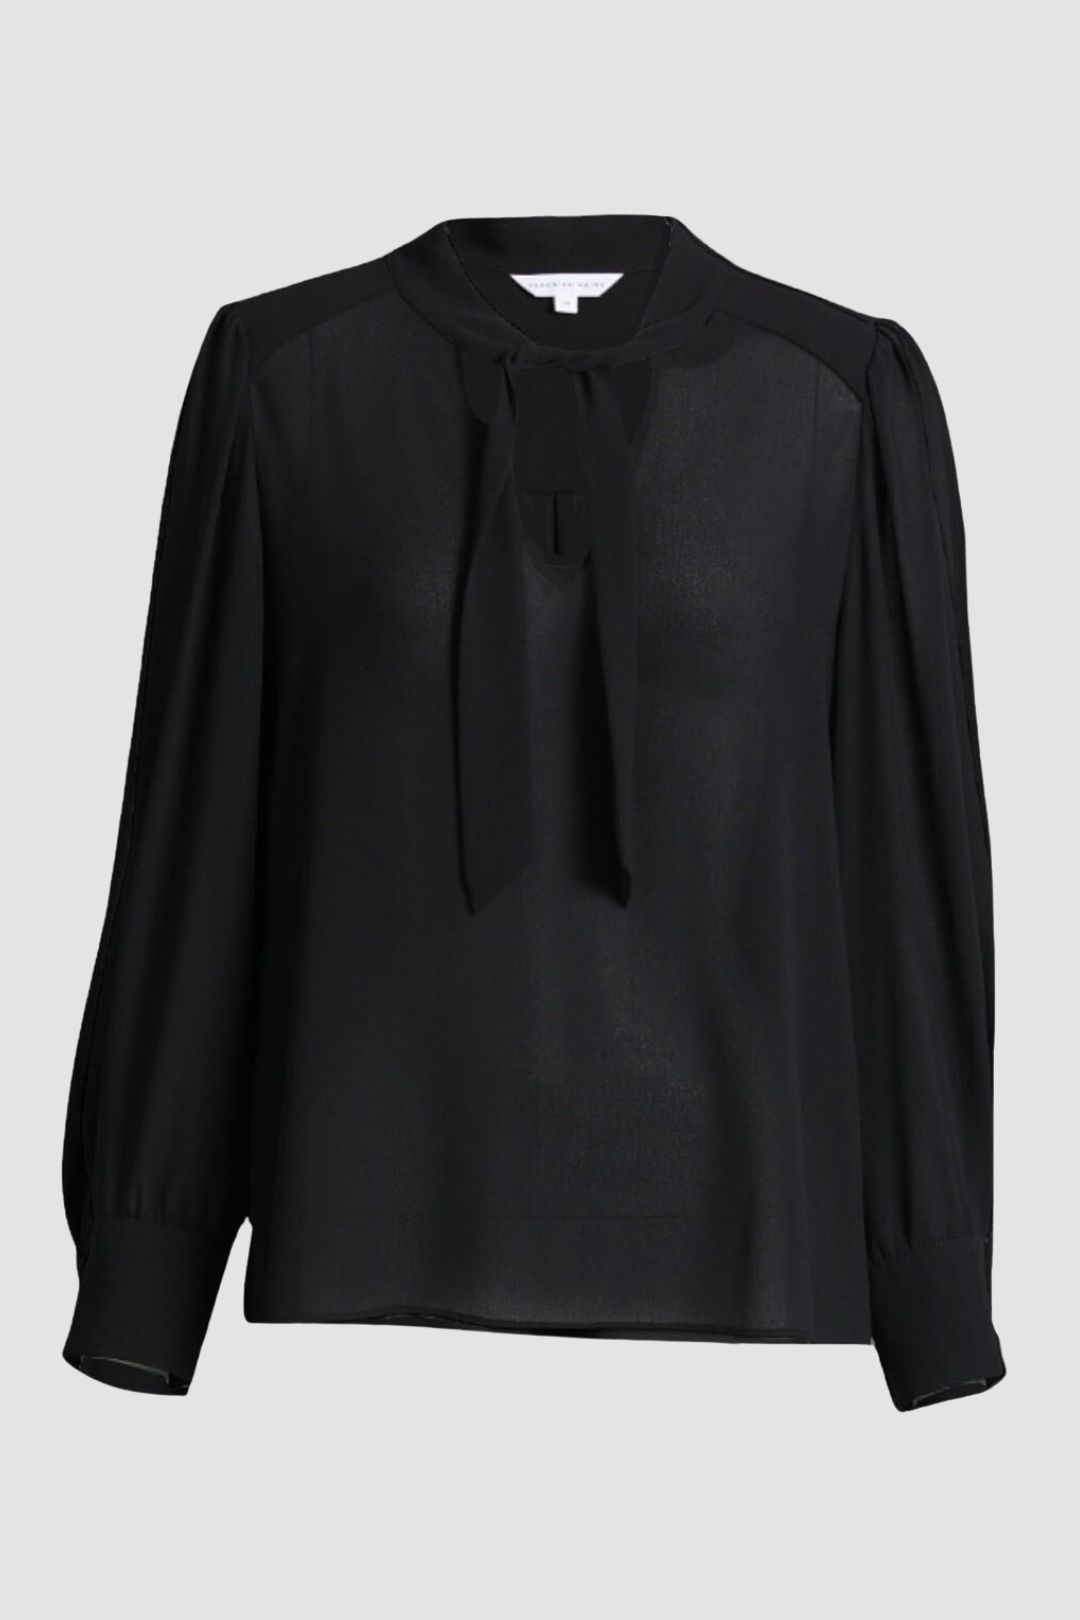 Veronika Maine - Tie Long Sleeve Blouse in Black